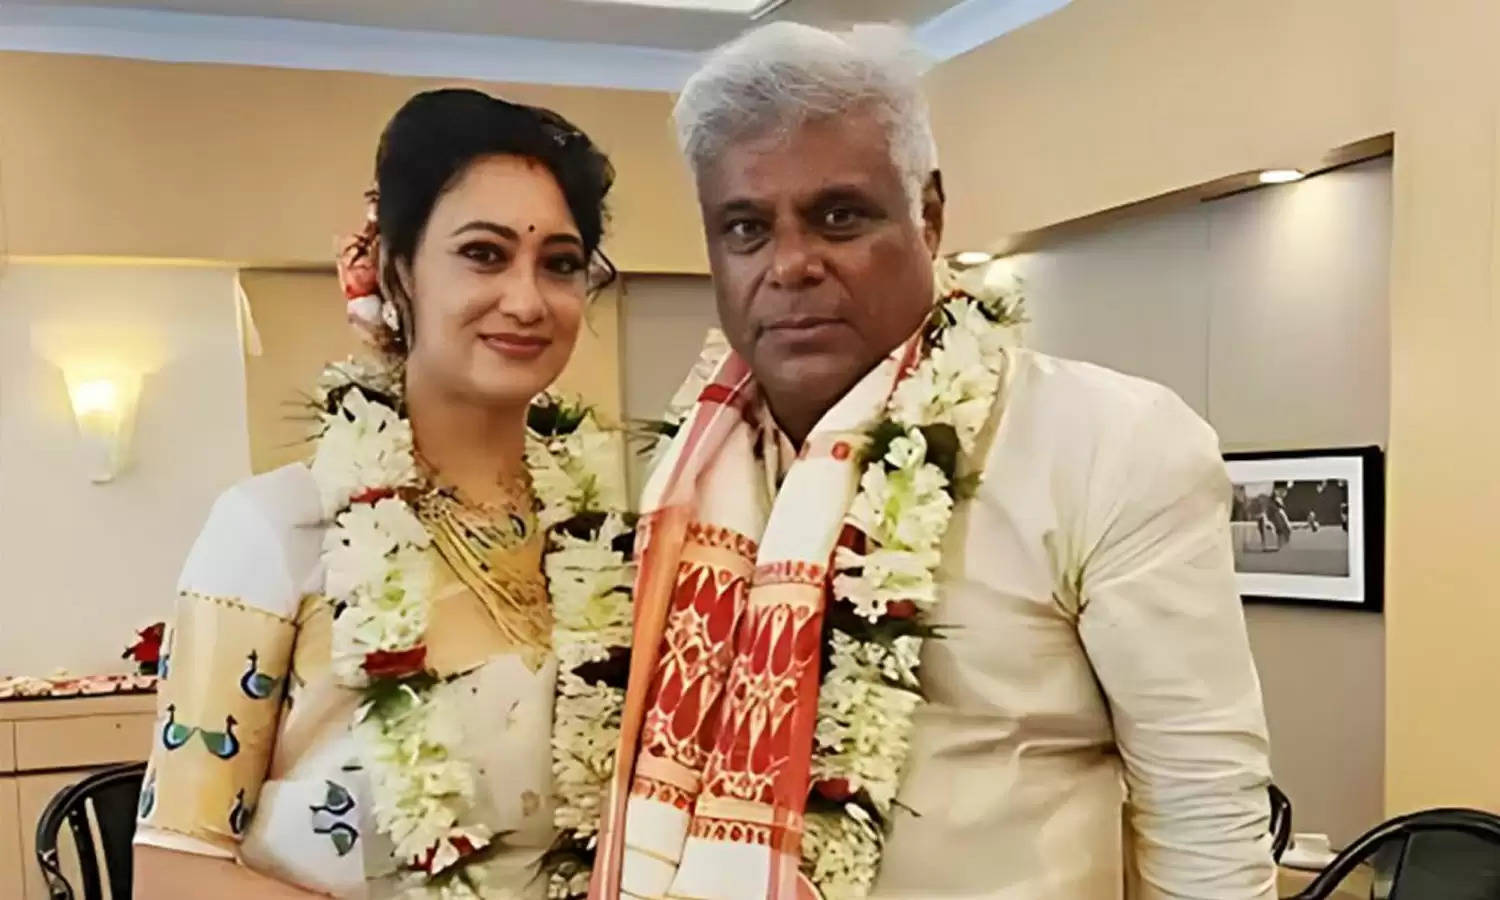 Rupali Barua Photos: बेहद खूबसूरत हैं आशीष विद्यार्थी की नई दुल्हनिया, जिनसे 60 साल की उम्र में की दूसरी शादी